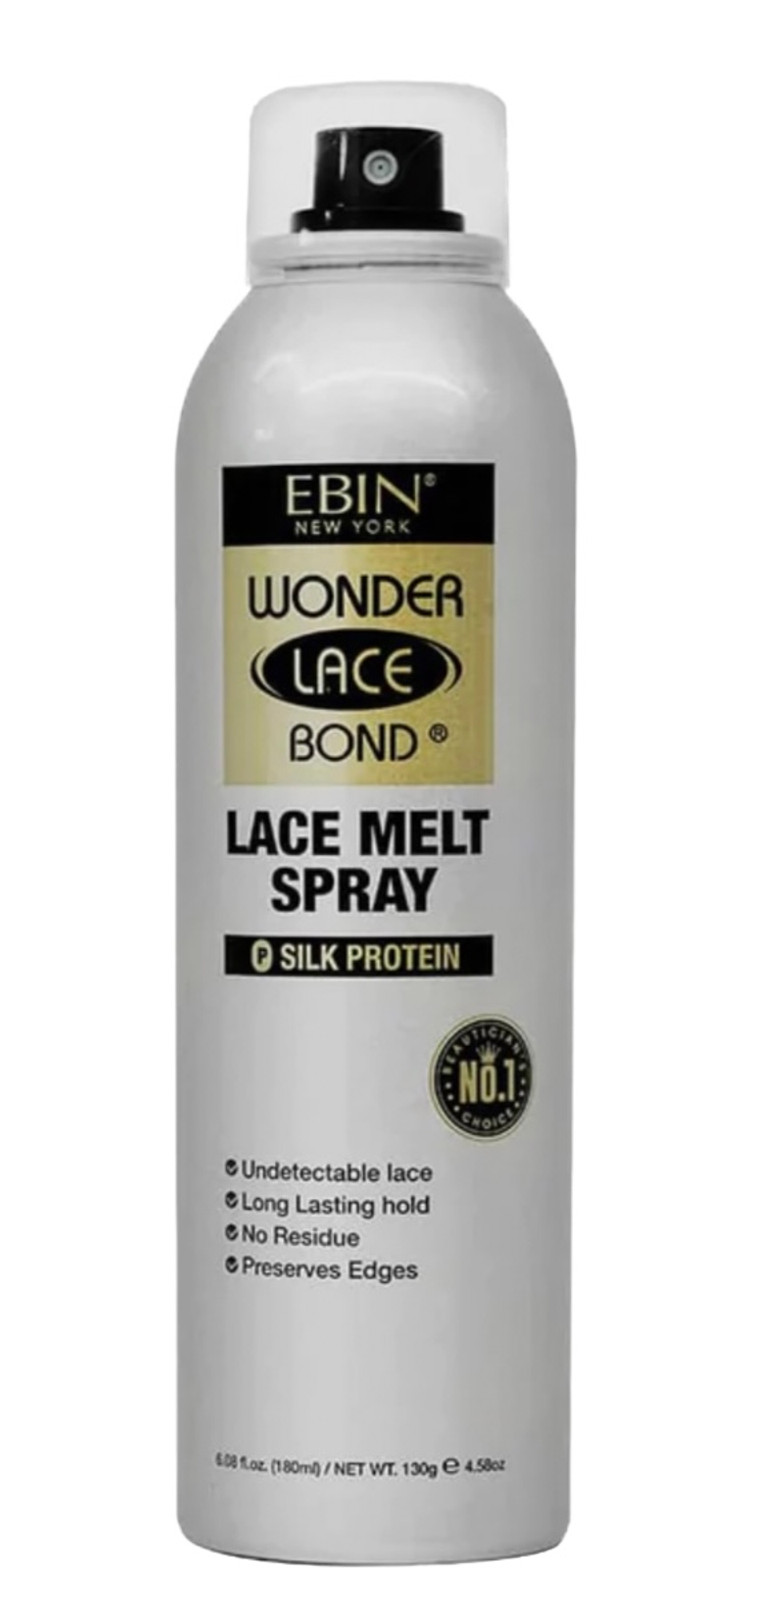 Ebin Wonder Lace Bond Adhesive Spray Extra Mega Hold 6.08oz